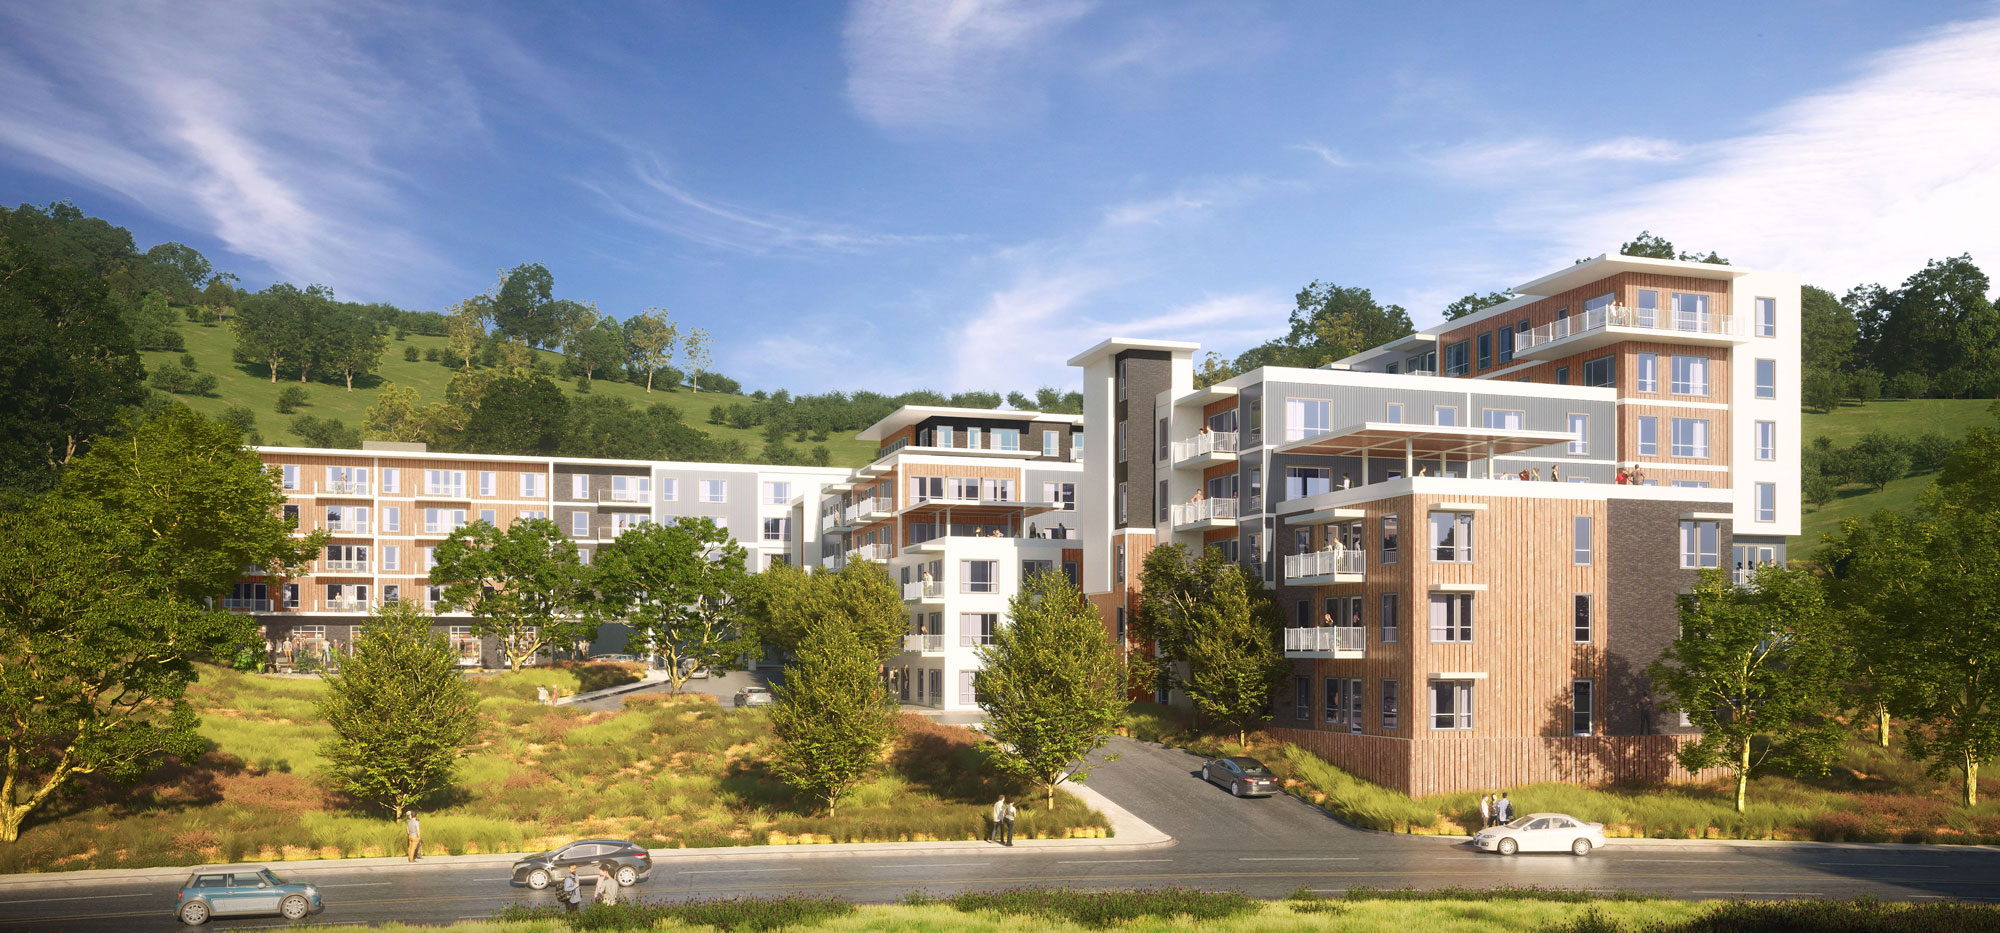 Oak Hill Apartments Conceptual Rendering